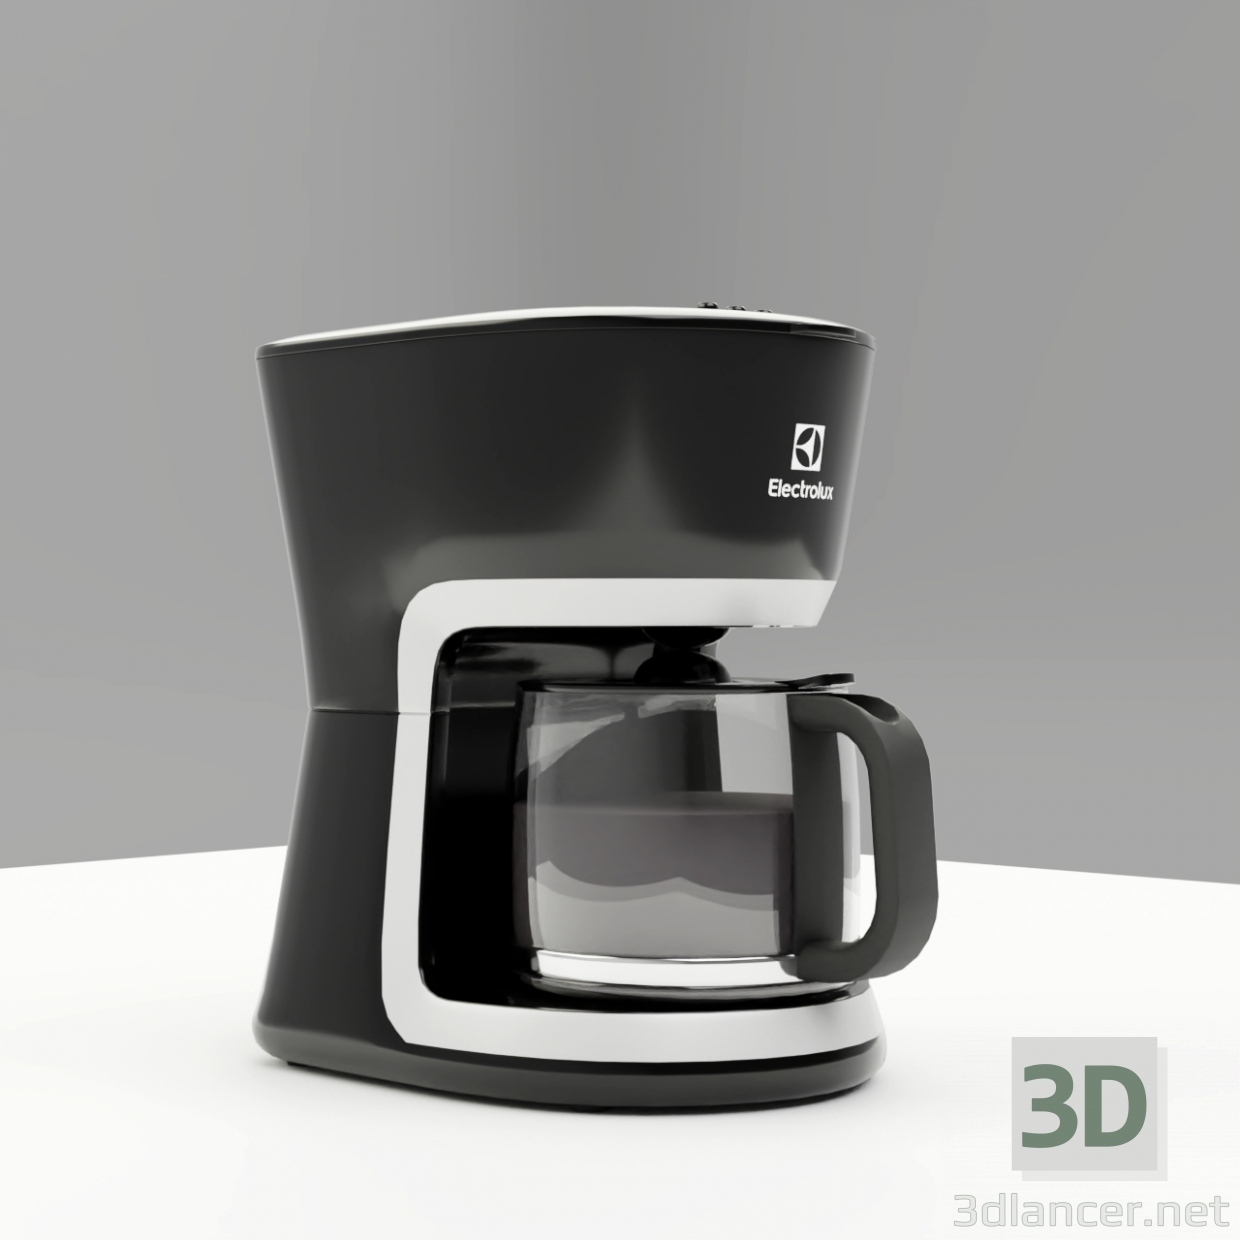 3d Electrolux Coffee Maker Ecm 3505 model buy - render